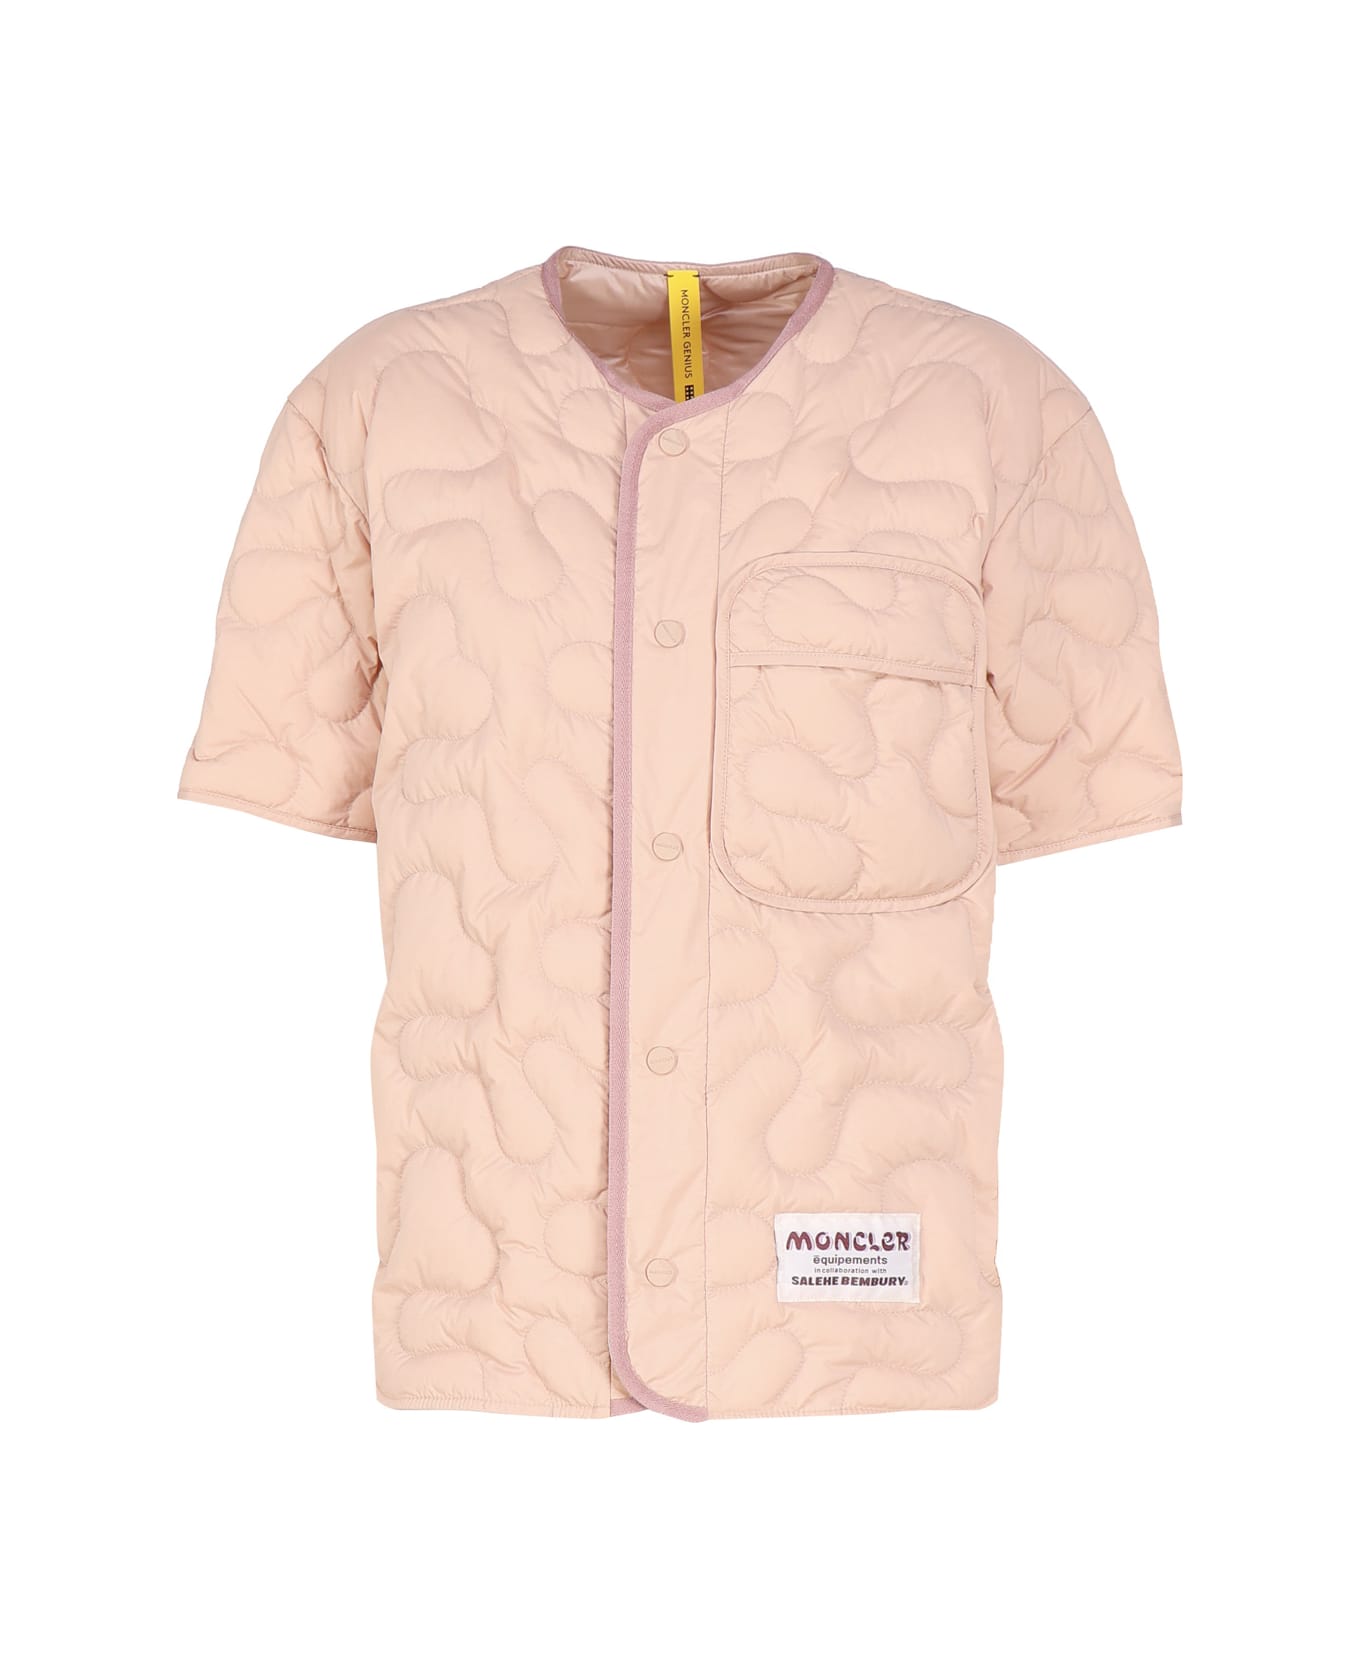 Moncler Genius Moncler X Salehe Bembury Padded Shirt - Pink トップス